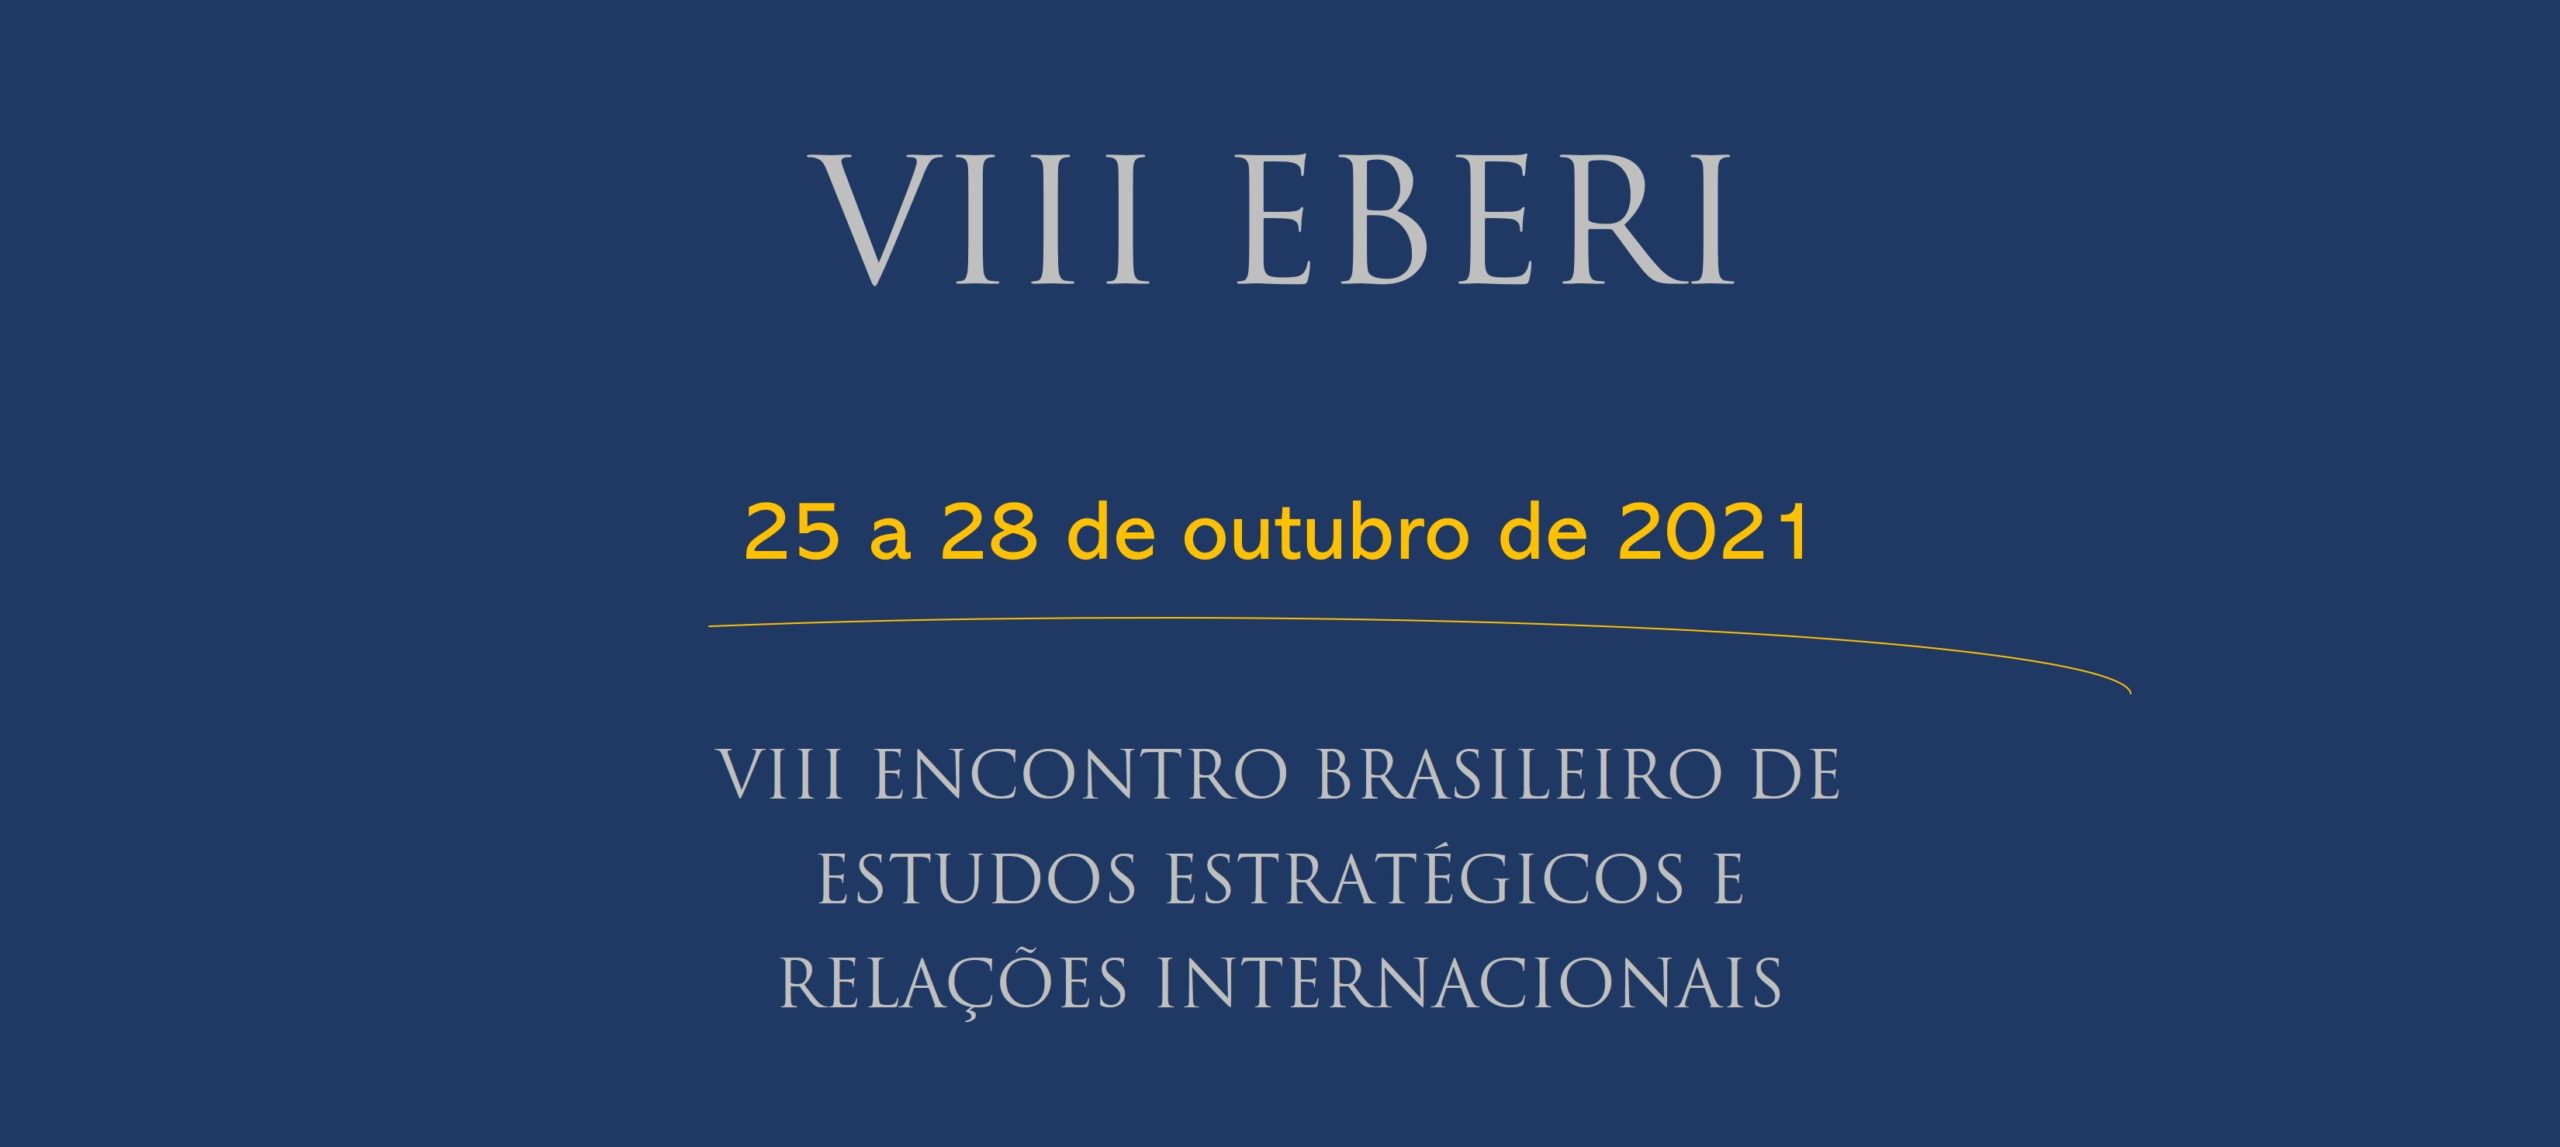 VIII ENCONTRO BRASILEIRO DE ESTUDOS ESTRATÉGICOS E RELAÇÕES INTERNACIONAIS